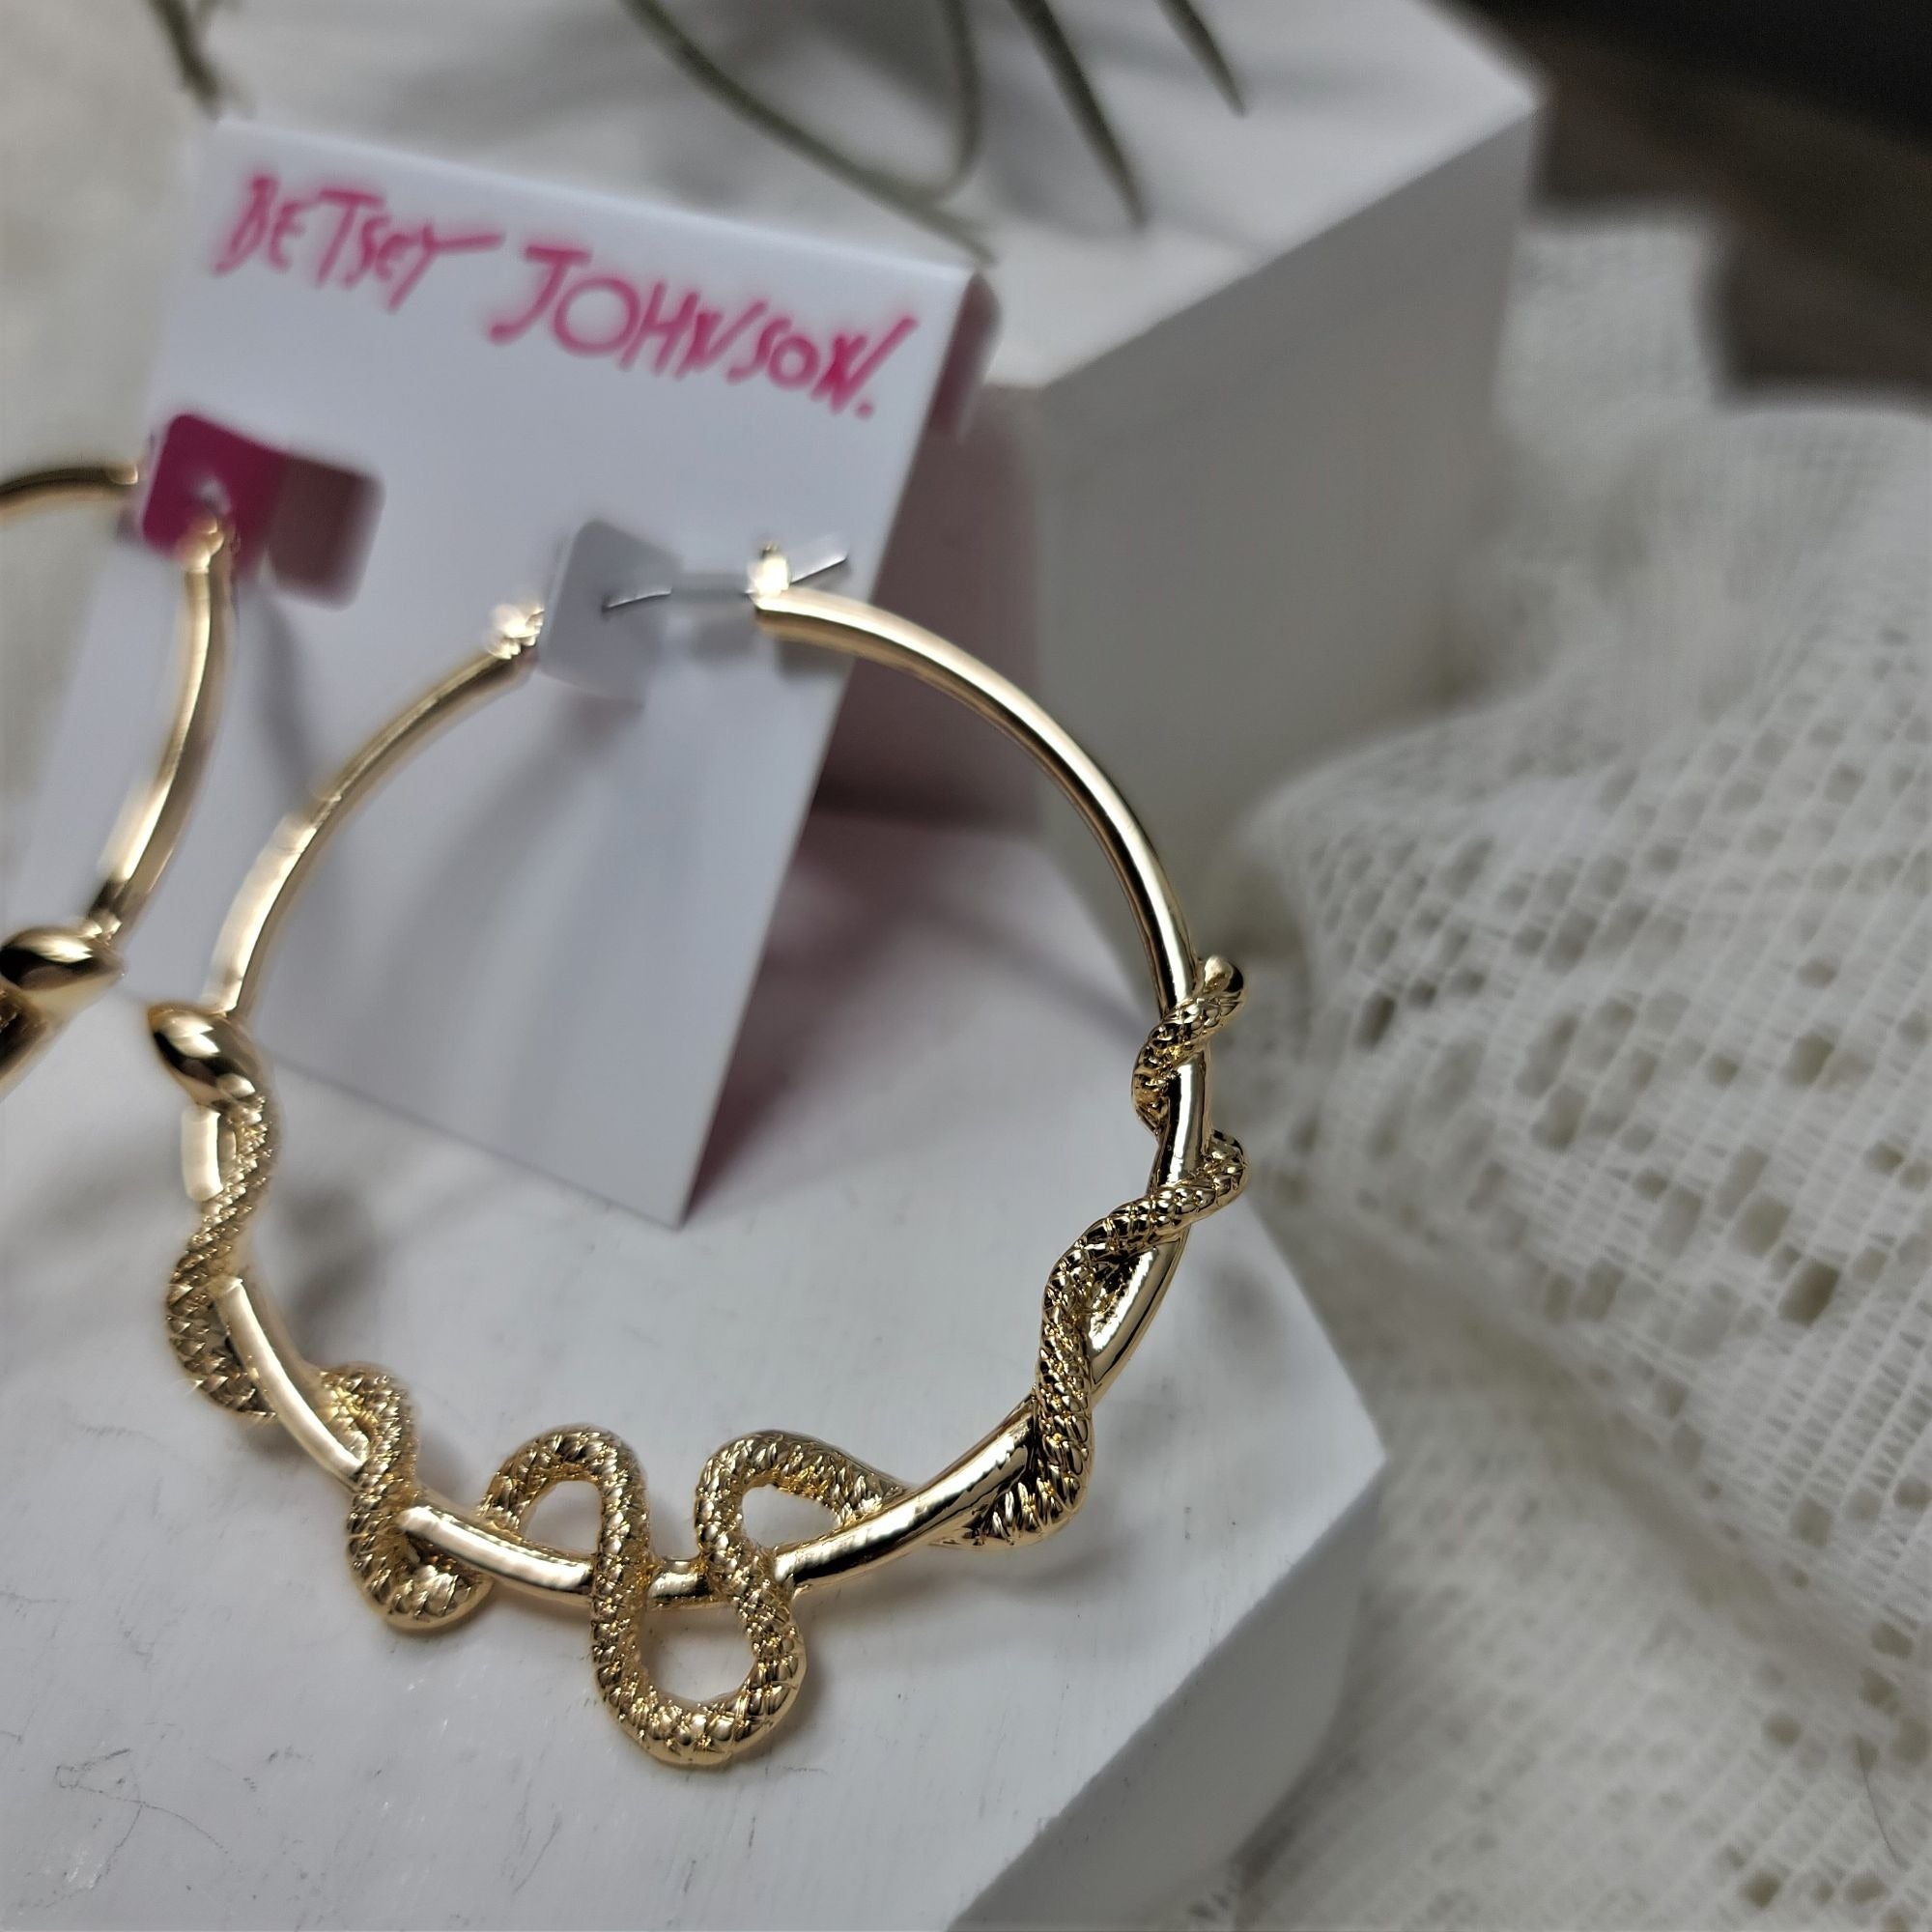 Betsey Johnson Seductive Snake Hoop Earrings Gold-tone Pierced NWT